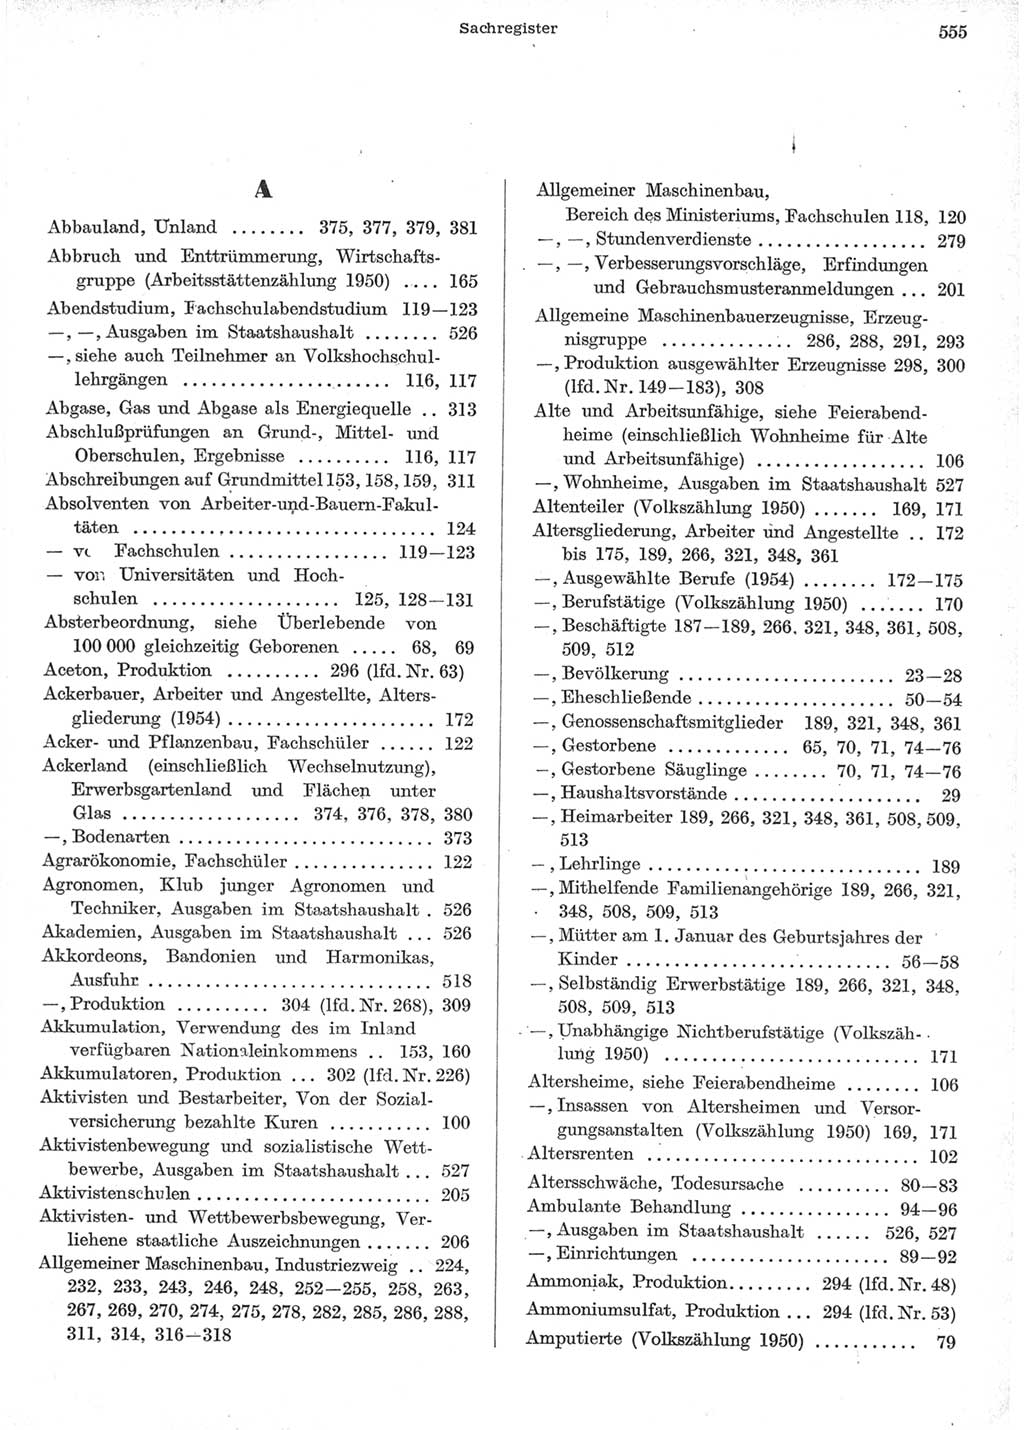 Statistisches Jahrbuch der Deutschen Demokratischen Republik (DDR) 1957, Seite 555 (Stat. Jb. DDR 1957, S. 555)